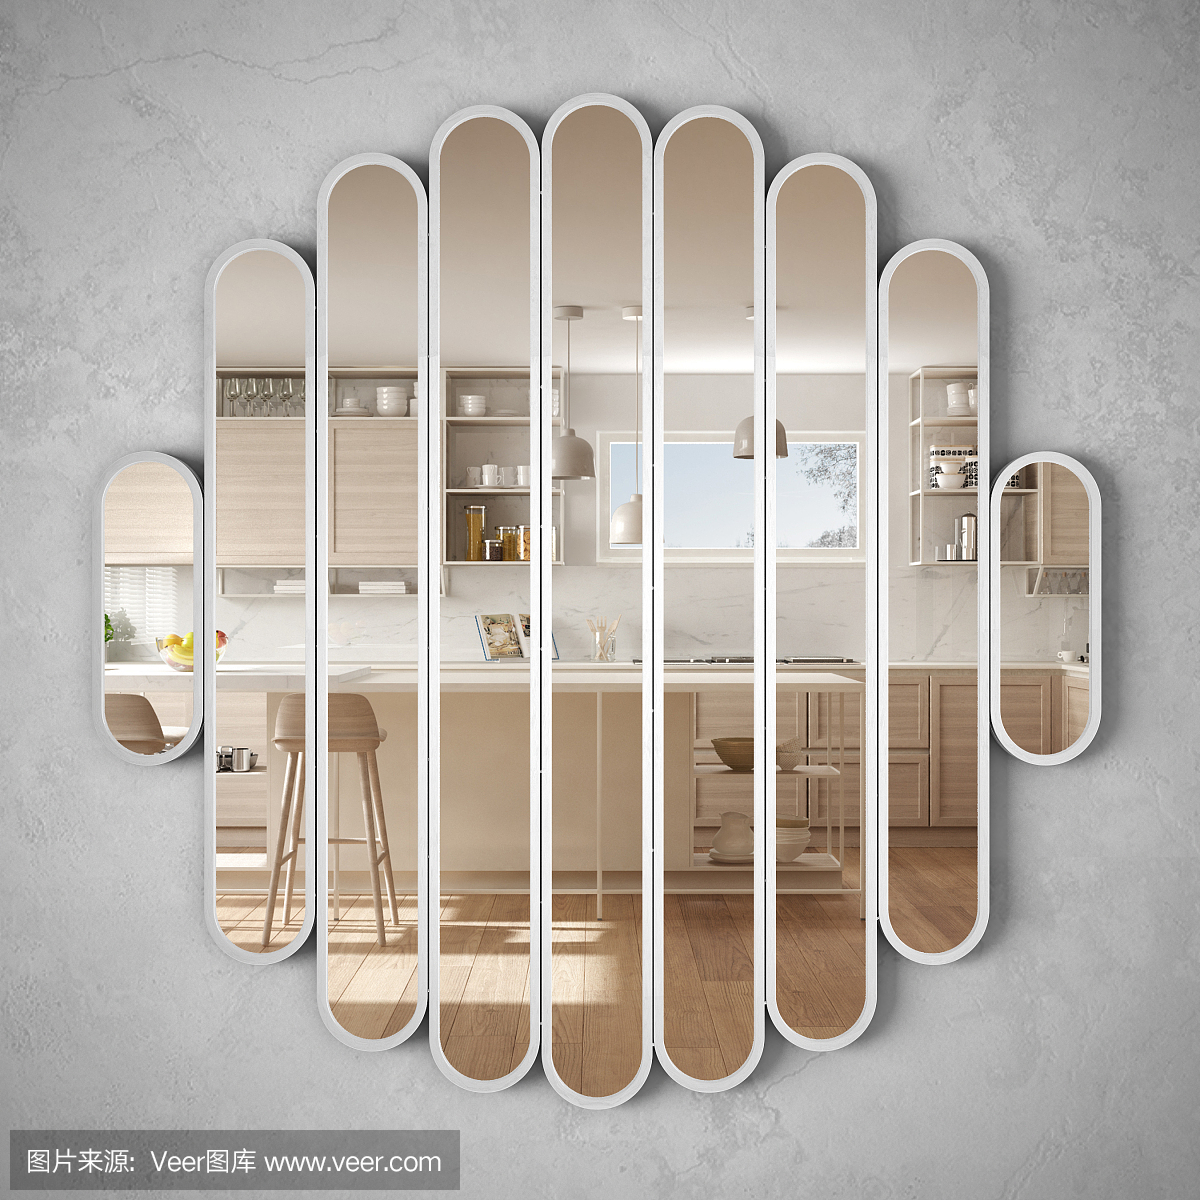 现代的镜子挂在墙上反映室内设计场景,明亮的白色和木制厨房,极简的白色建筑,建筑师的概念理念